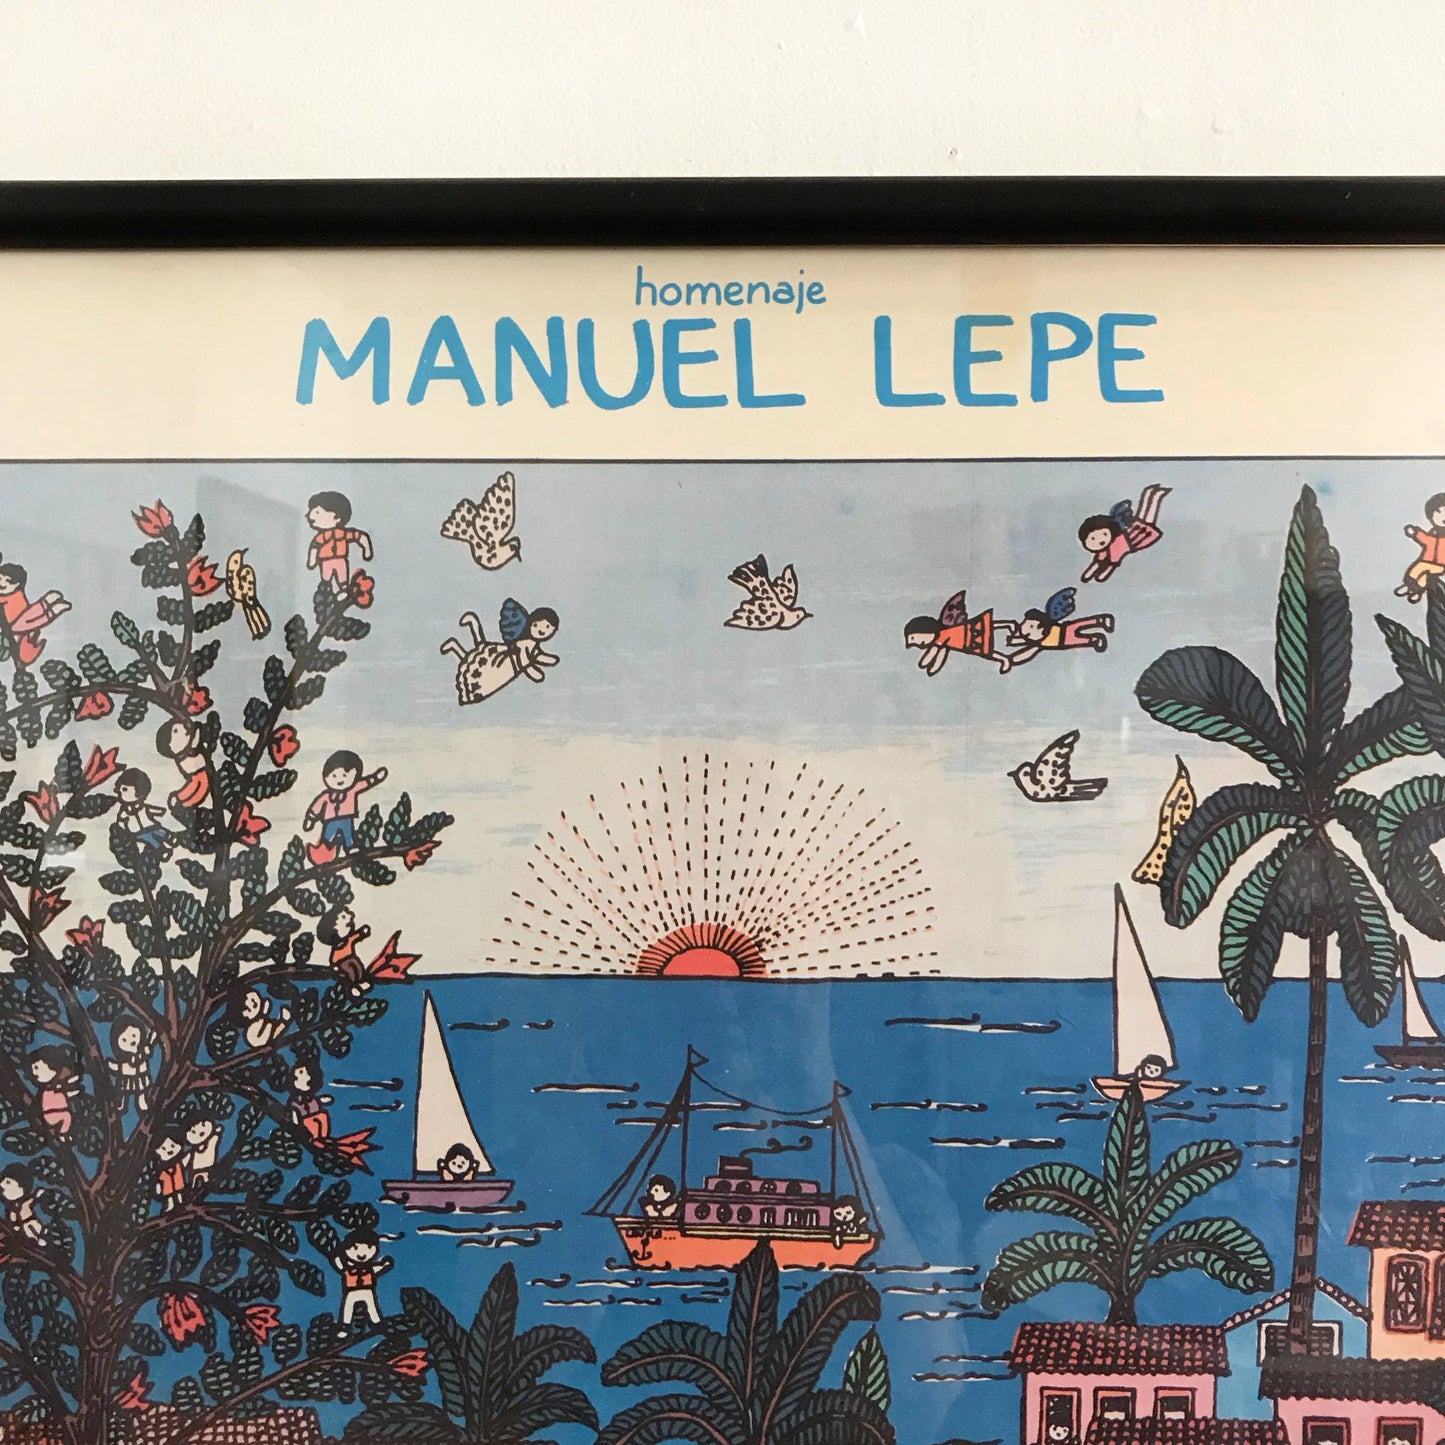 Vintage Manuel Lepe Poster Print, 1984